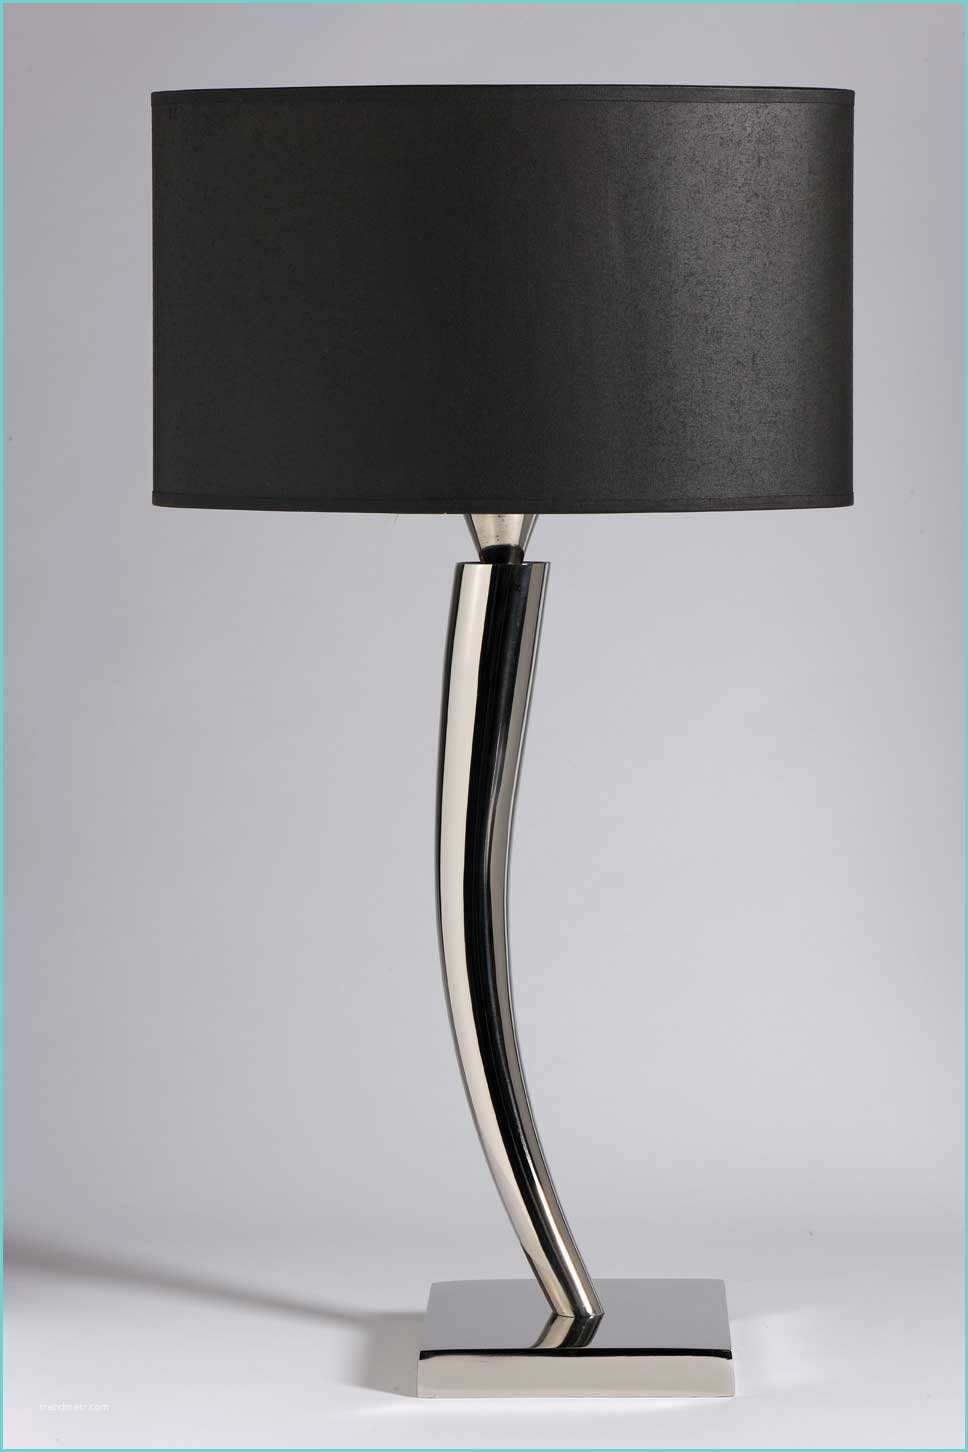 Lampe De Chevet Design Lampe Chevet Design Contemporain Le Design Led